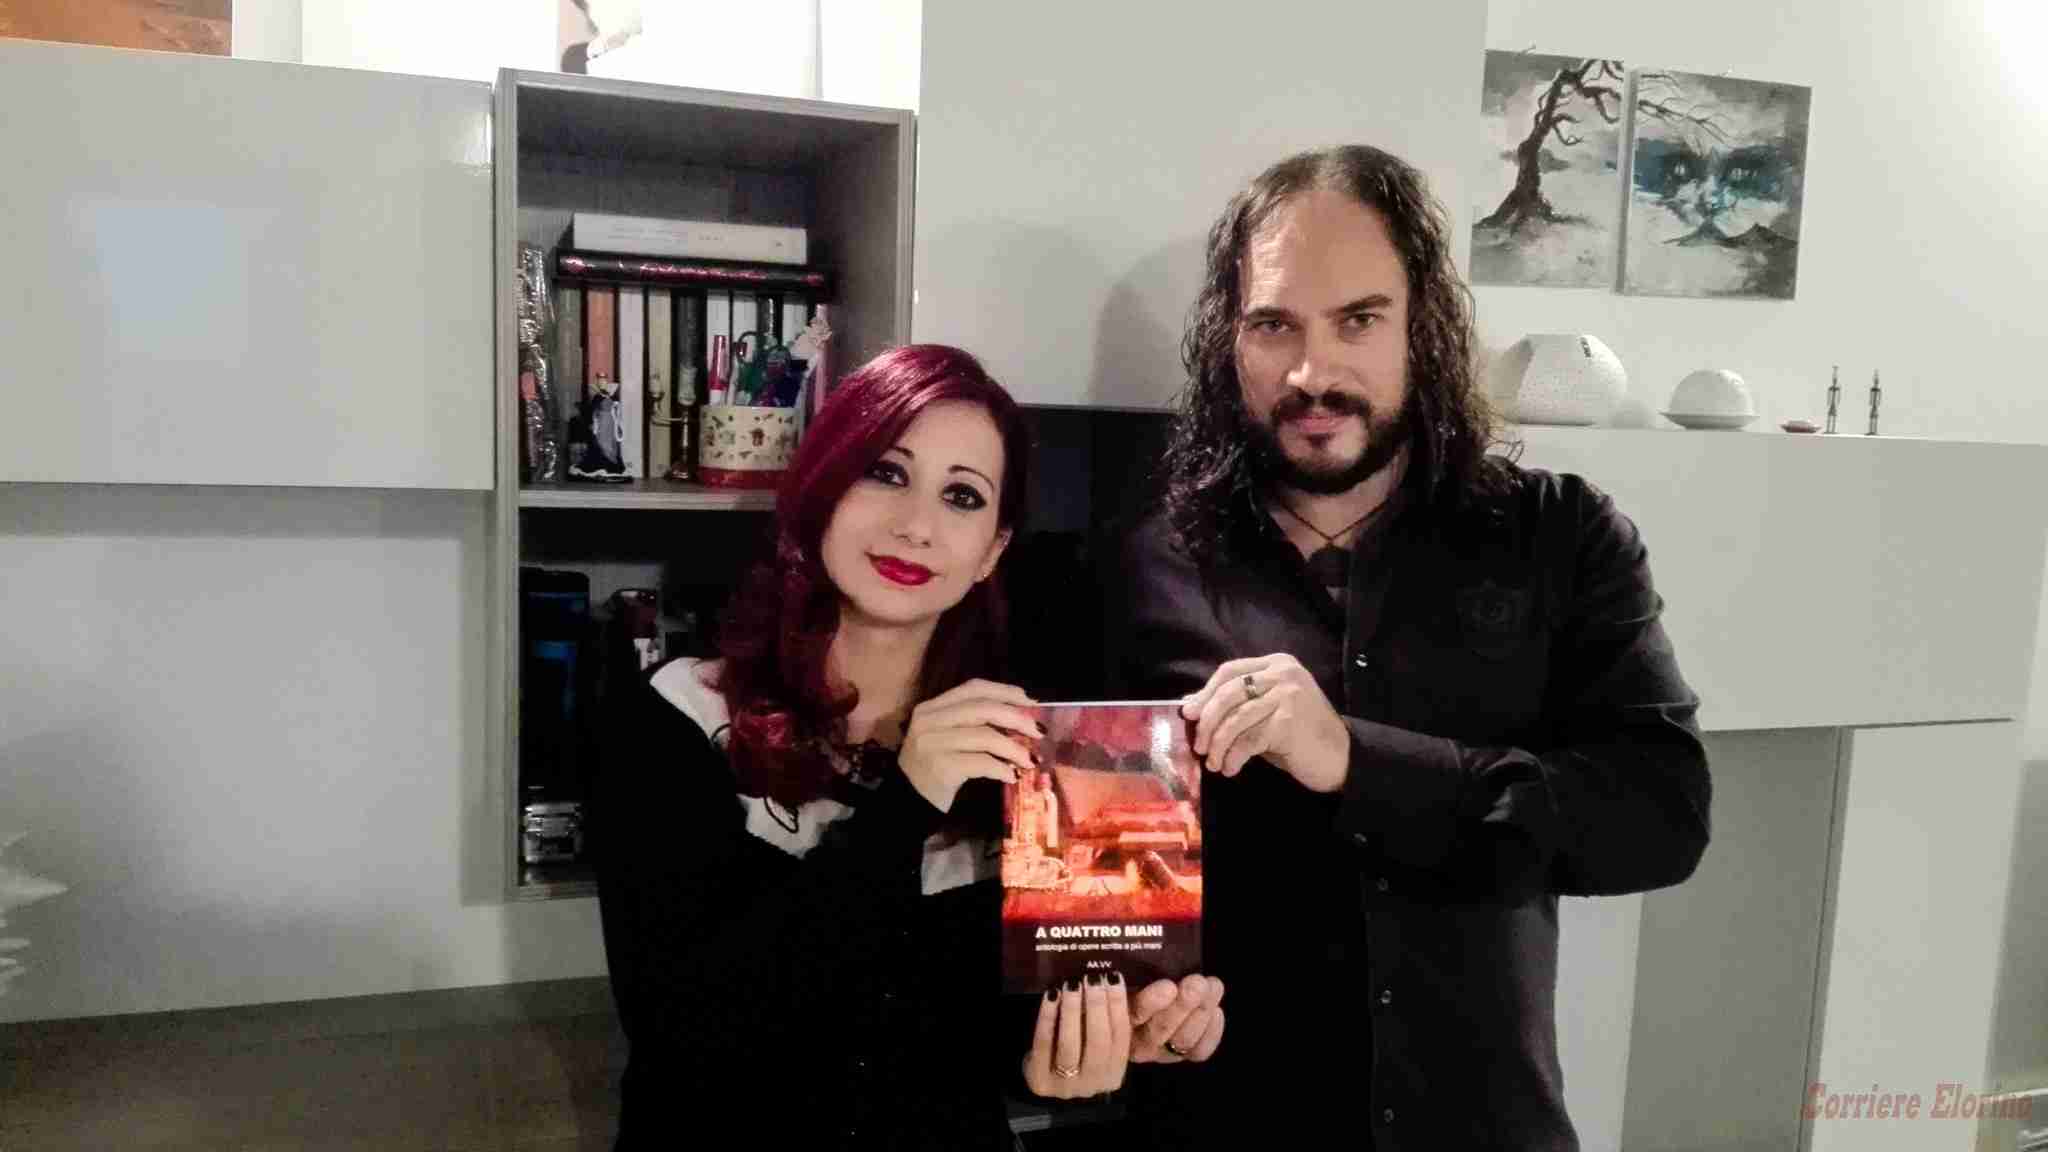 Giuseppe Gallato ed Elena Lorefice, due scrittori rosolinesi nell’antologia “A quattro mani”